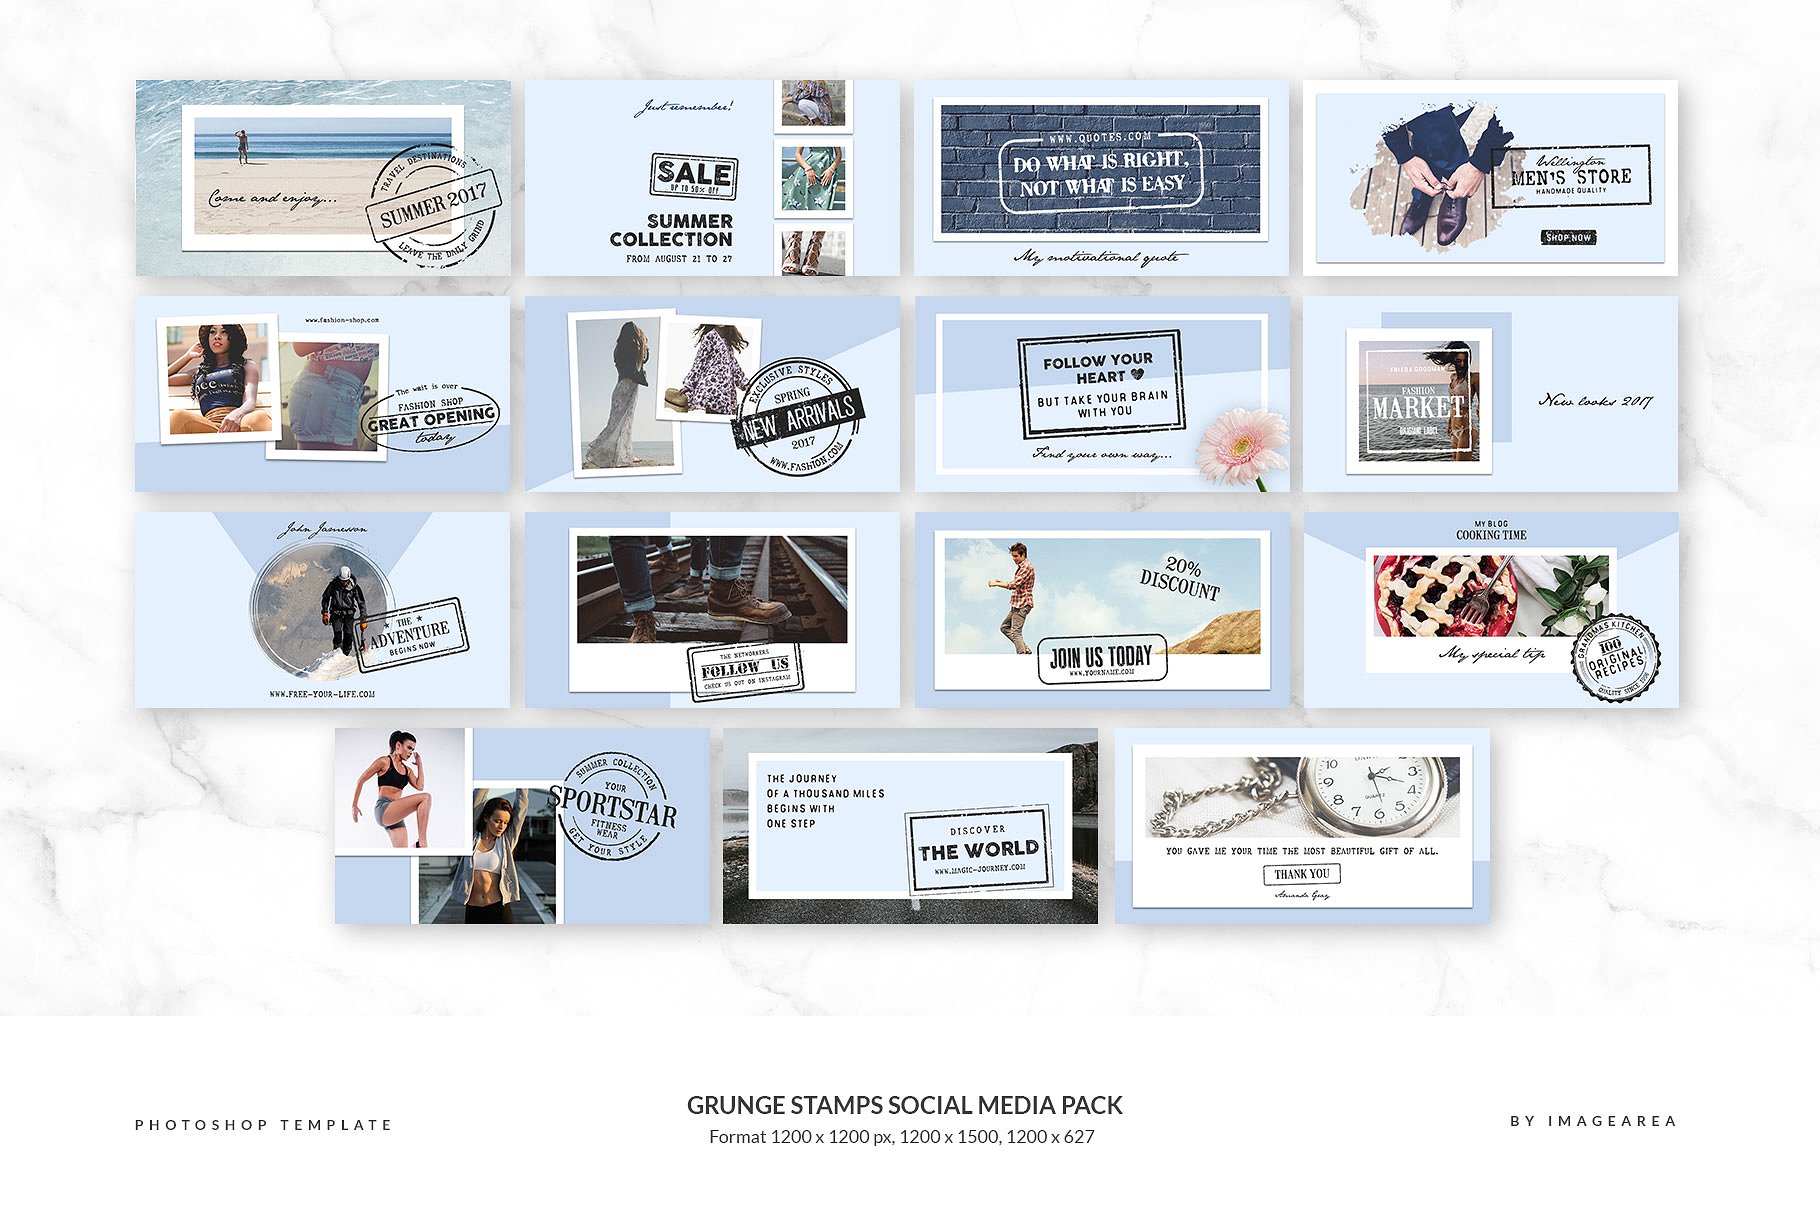 社交媒体、博客插图设计素材包 Grunge stamps Social Media Pack插图(5)